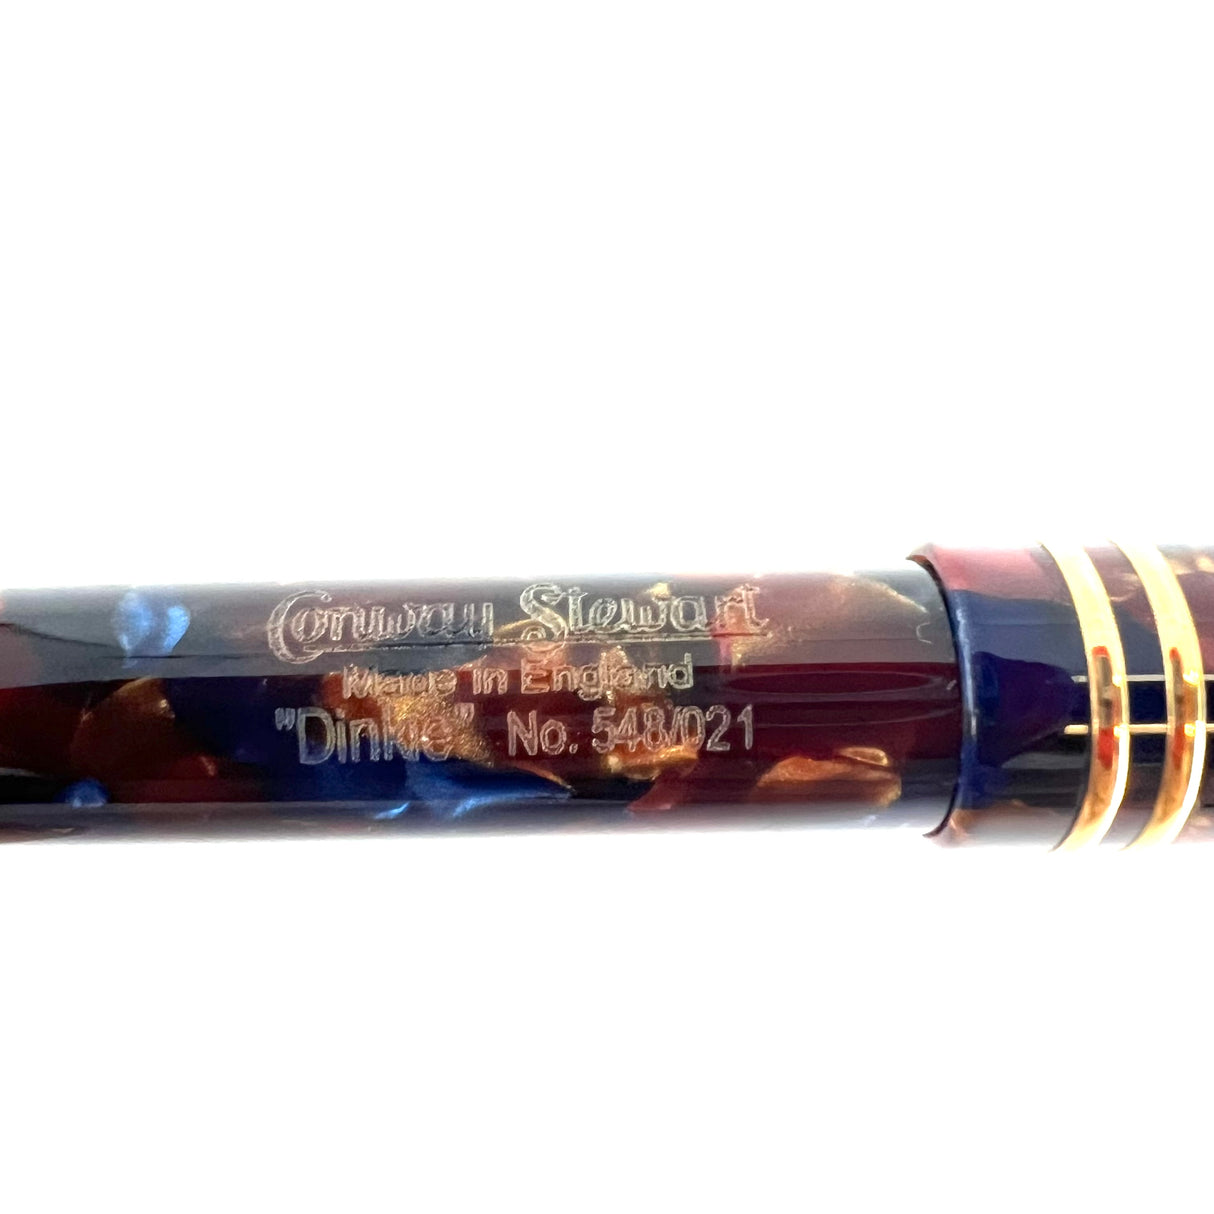 Conway Stewart Dinkie Marbled Cognac & Blue Ballpoint Pen